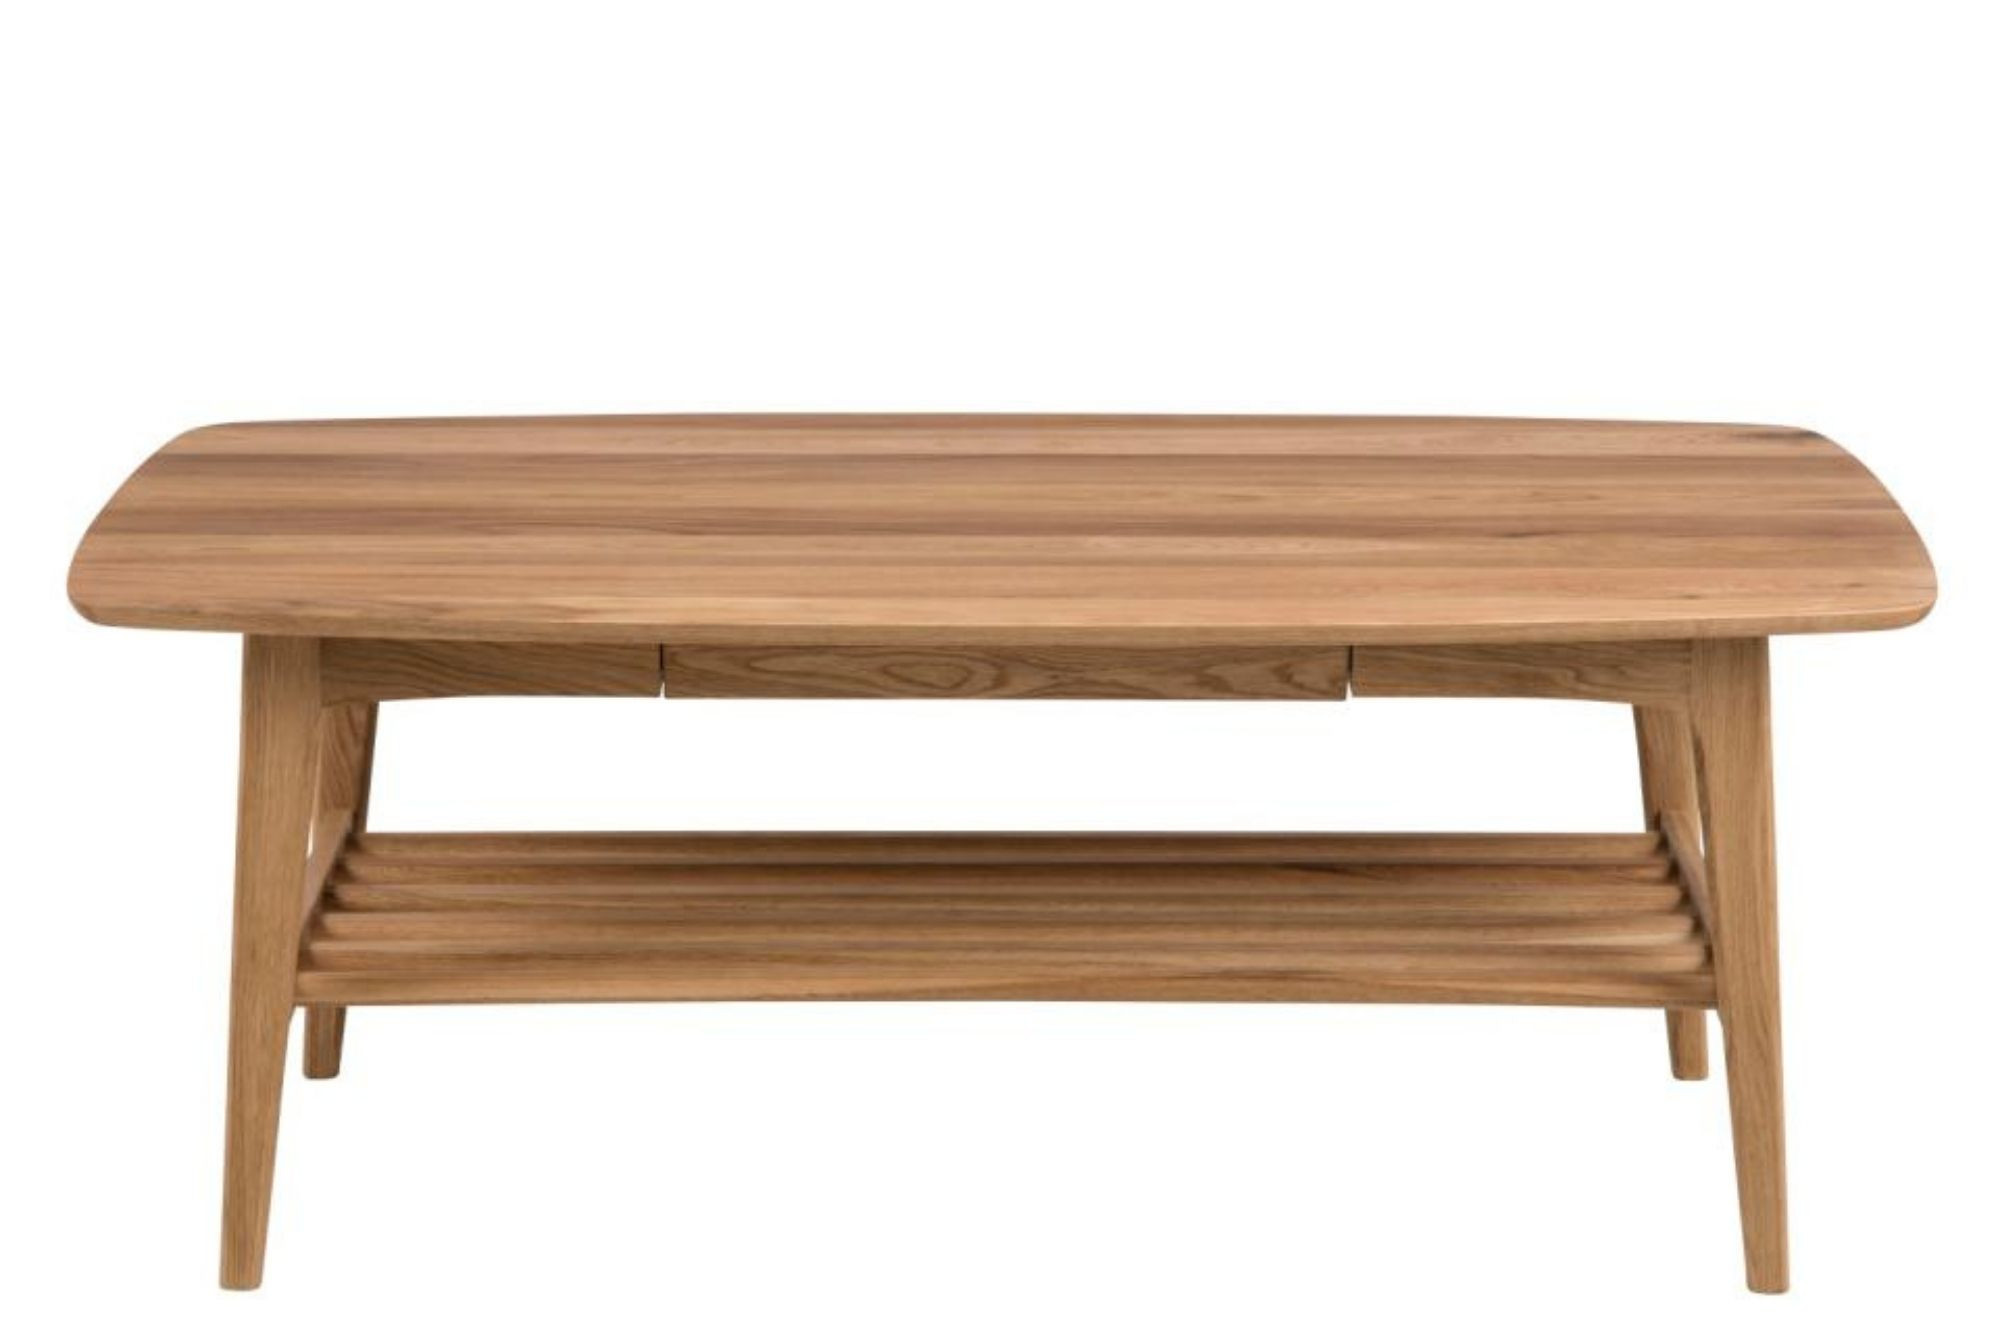 Table basse scandinave rectangulaire en bois massif avec rangement